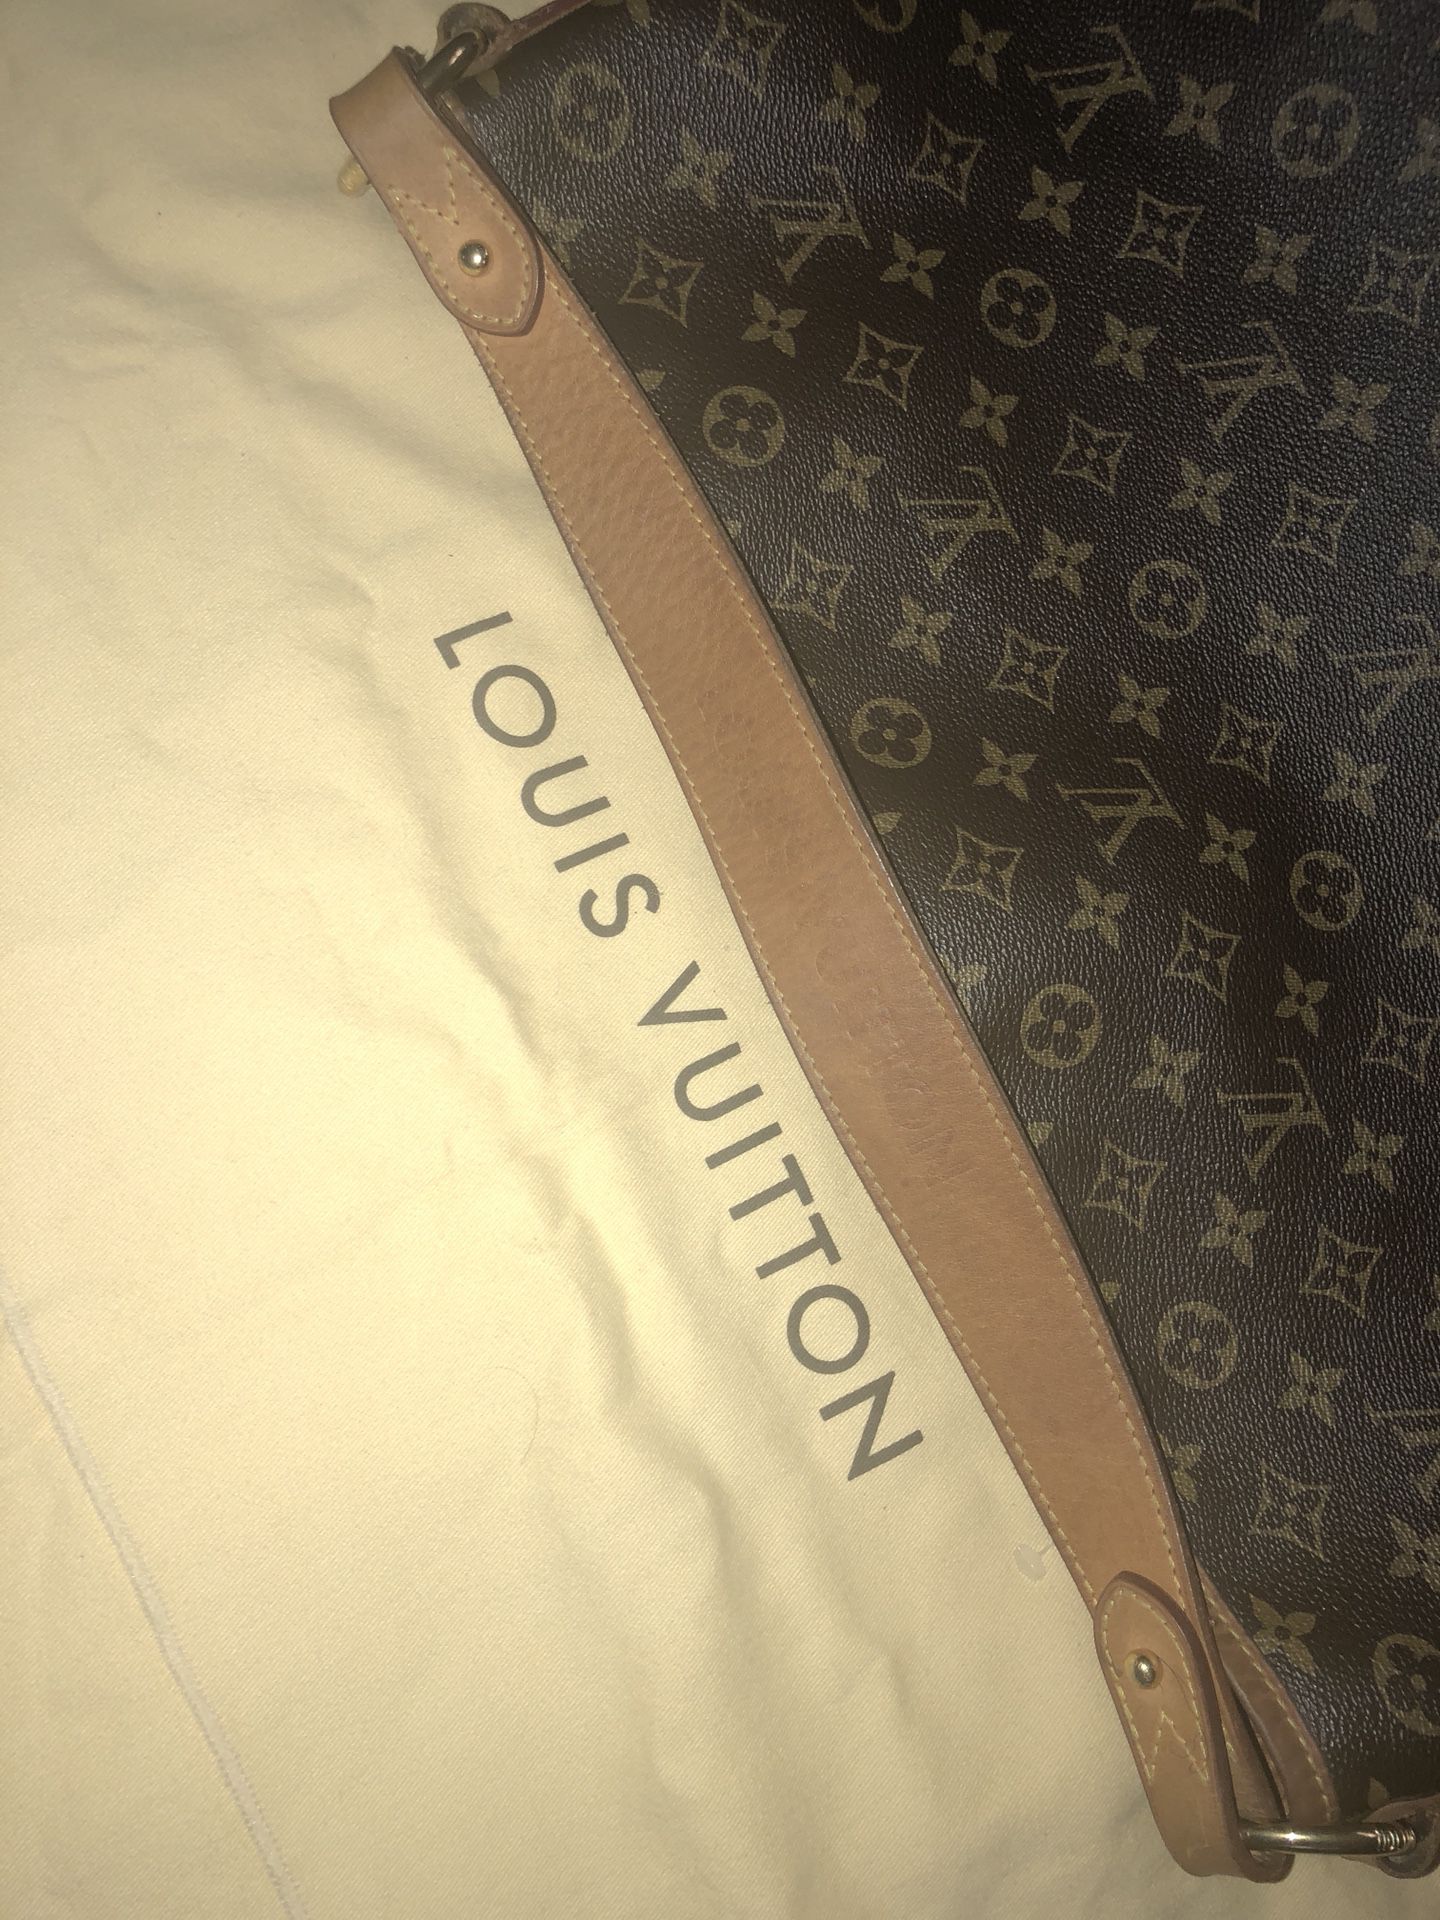 AUTHENTIC big Louis Vuitton for sale!!! for Sale in Phoenix, AZ - OfferUp